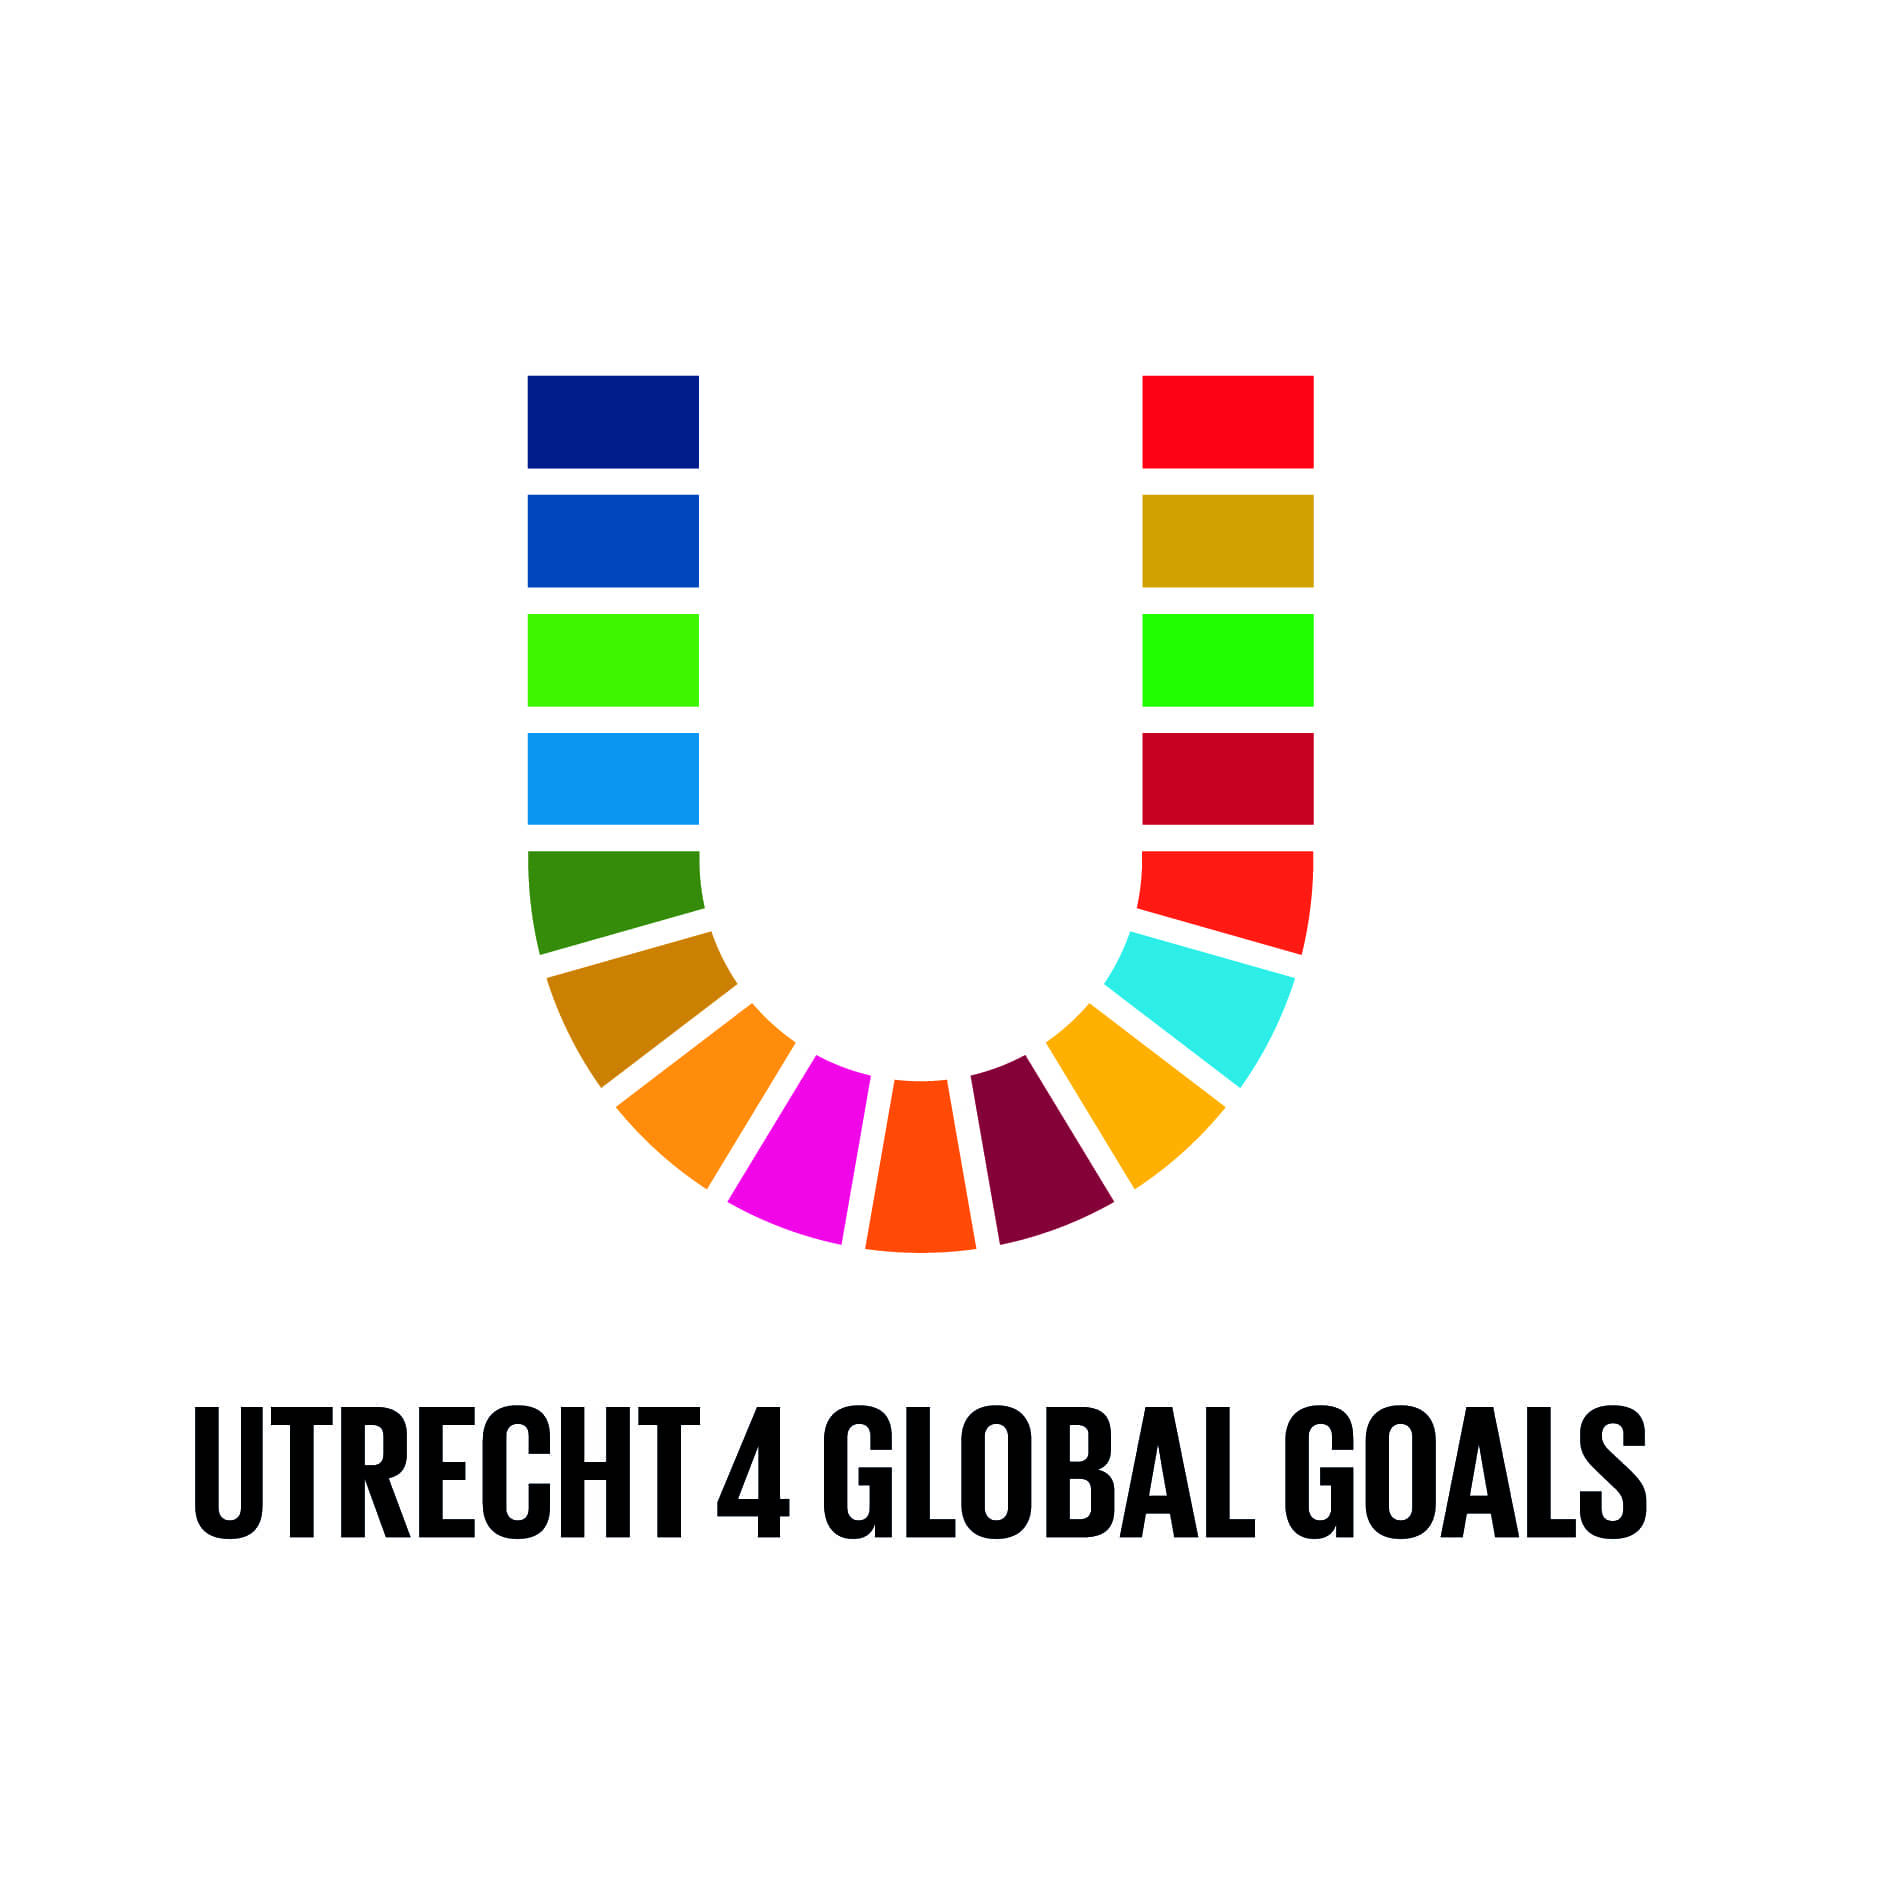 Utrecht 4 Global Goals